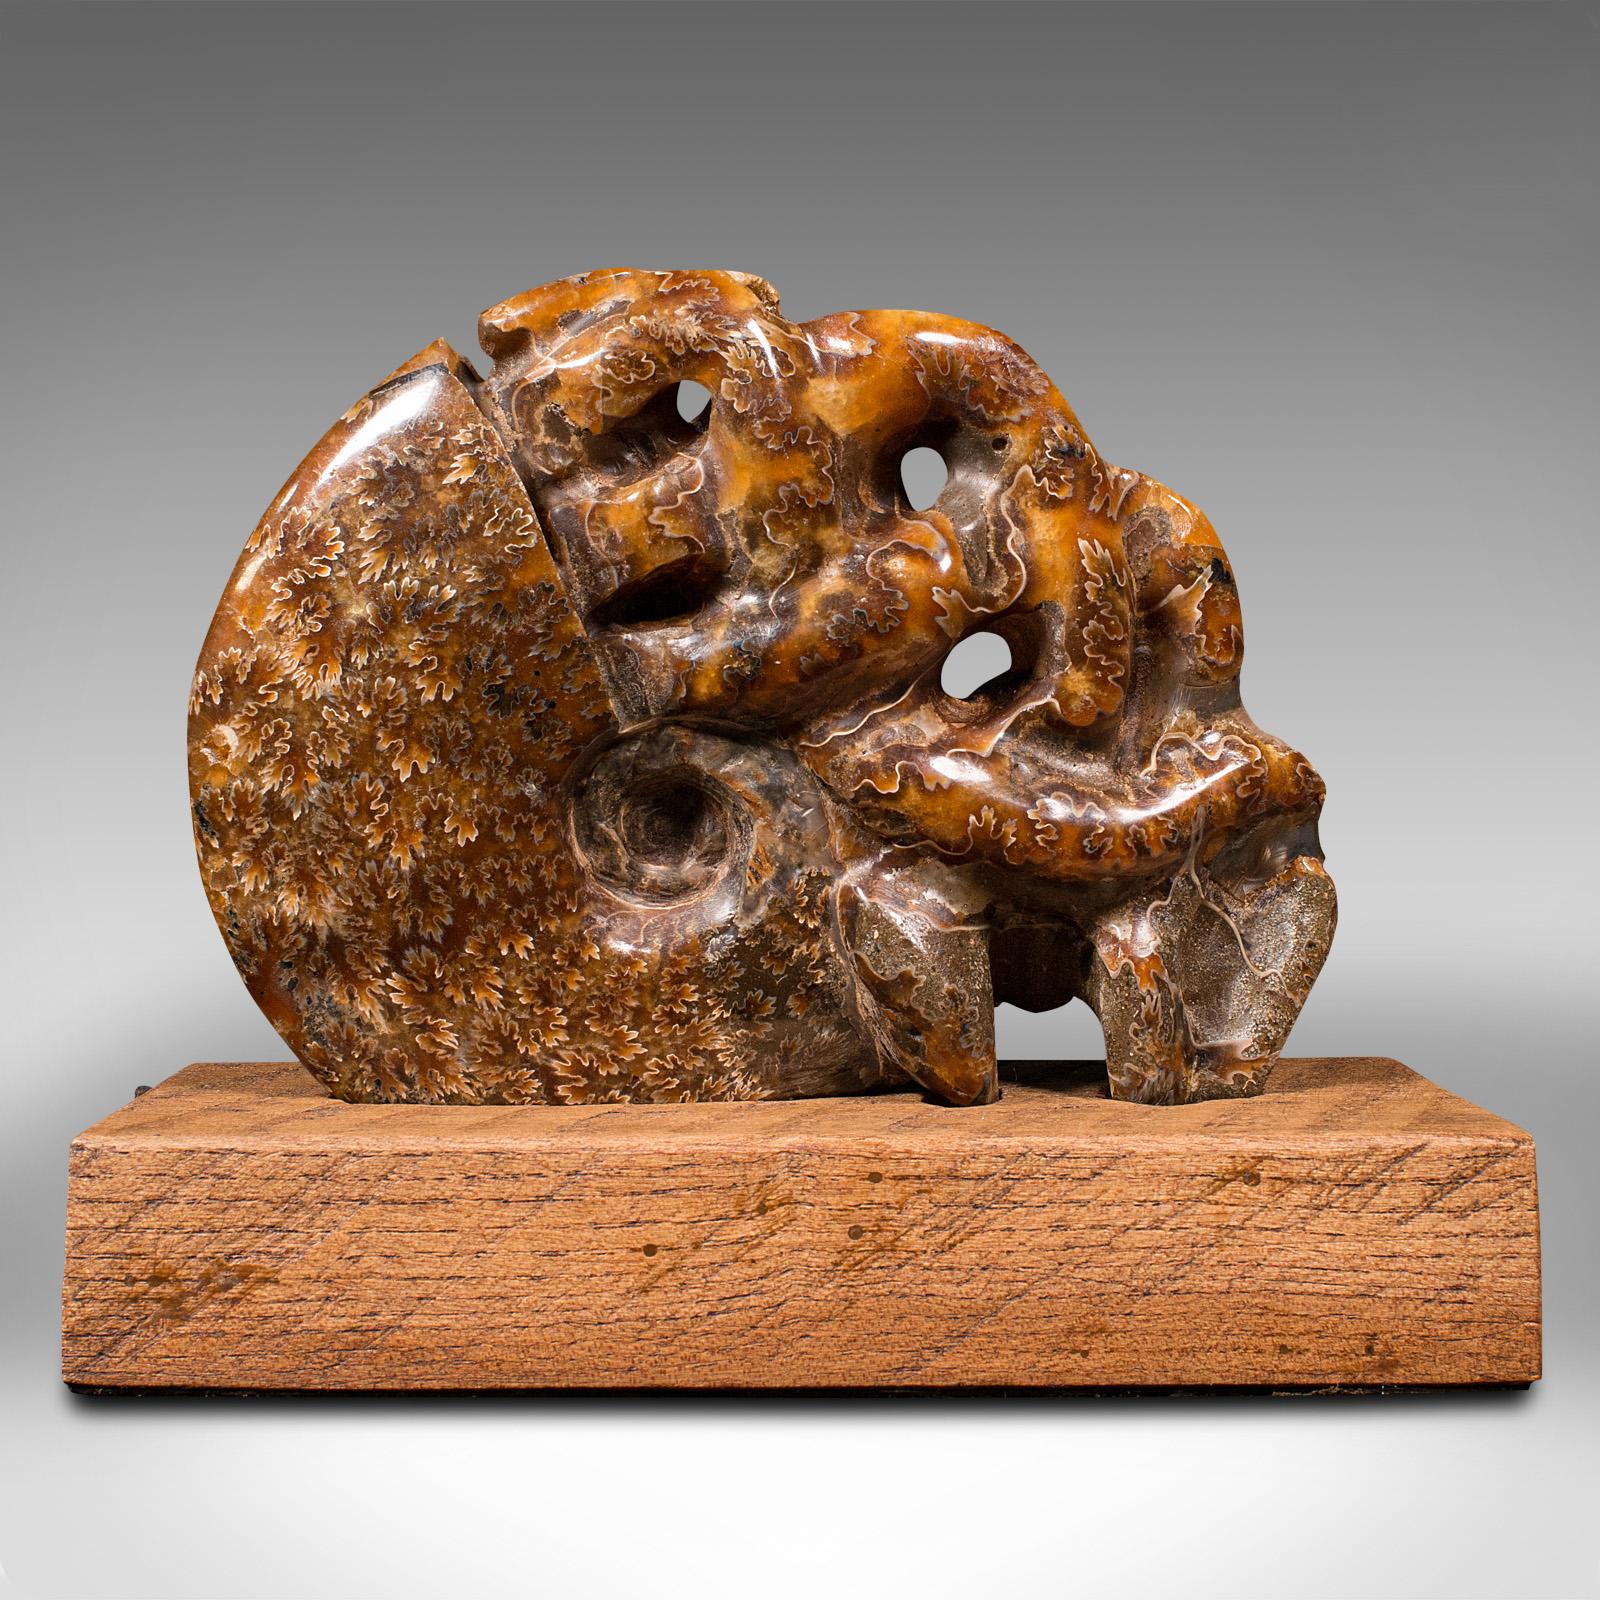 Il s'agit d'une ammonite décorative sculptée vintage. Fossile africain opalisé sur socle d'exposition, datant de la période du Crétacé, il y a des millions d'années, poli et présenté vers 1970. 

Ammonite habilement sculptée avec un bel attrait